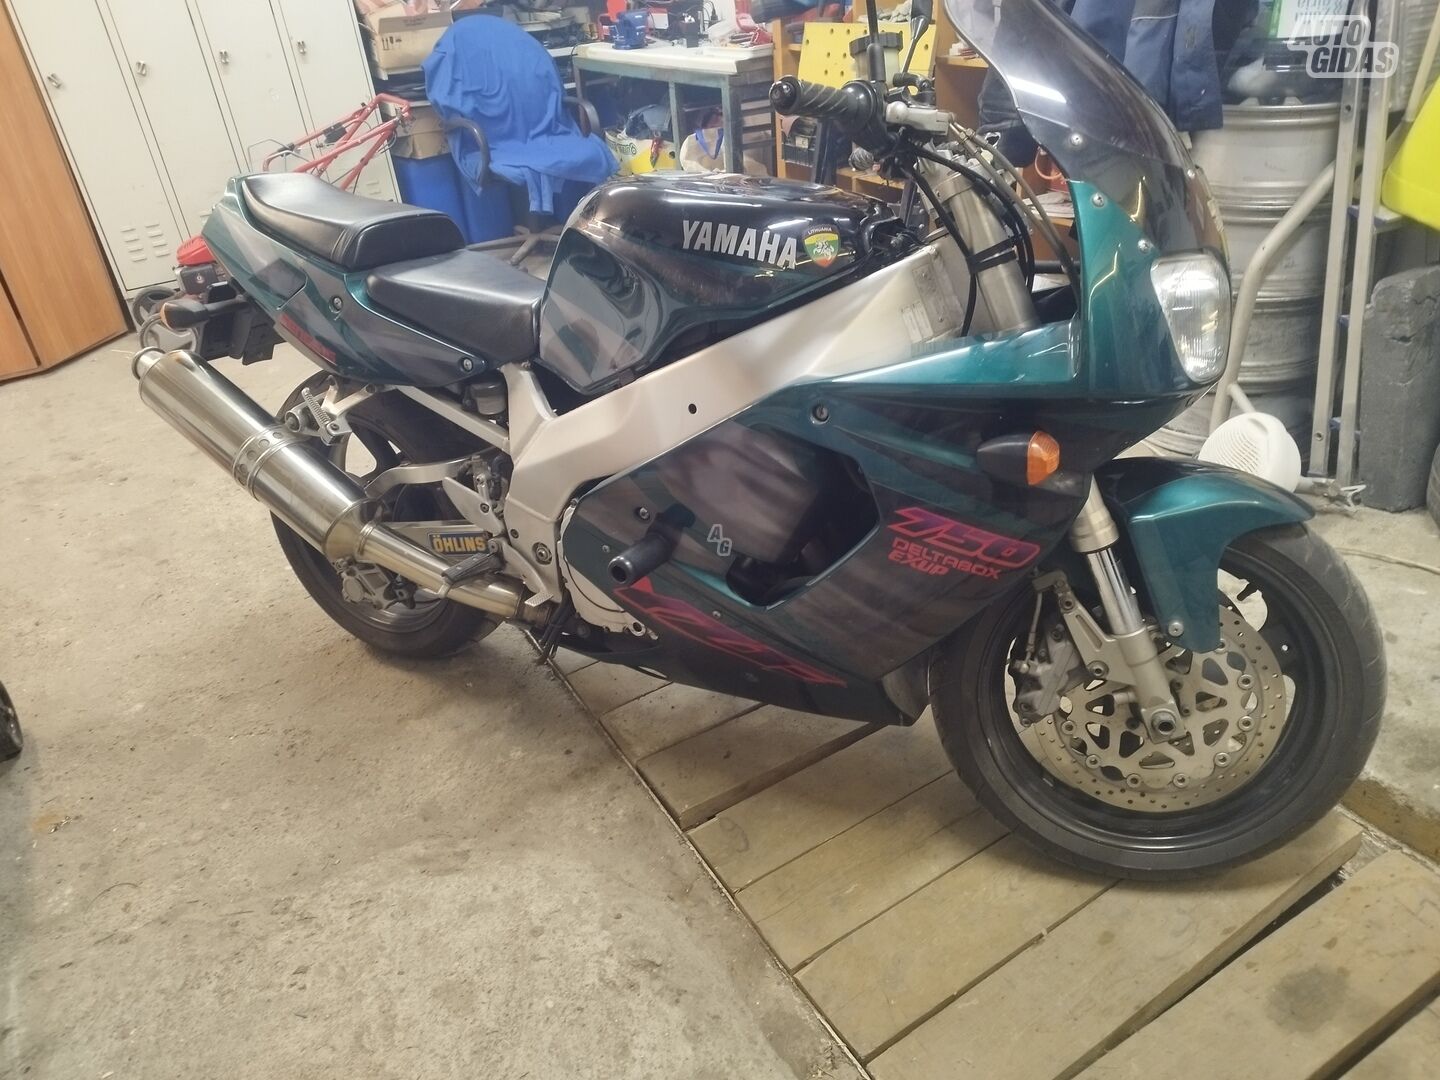 Yamaha YZF 1996 y Sport / Superbike motorcycle